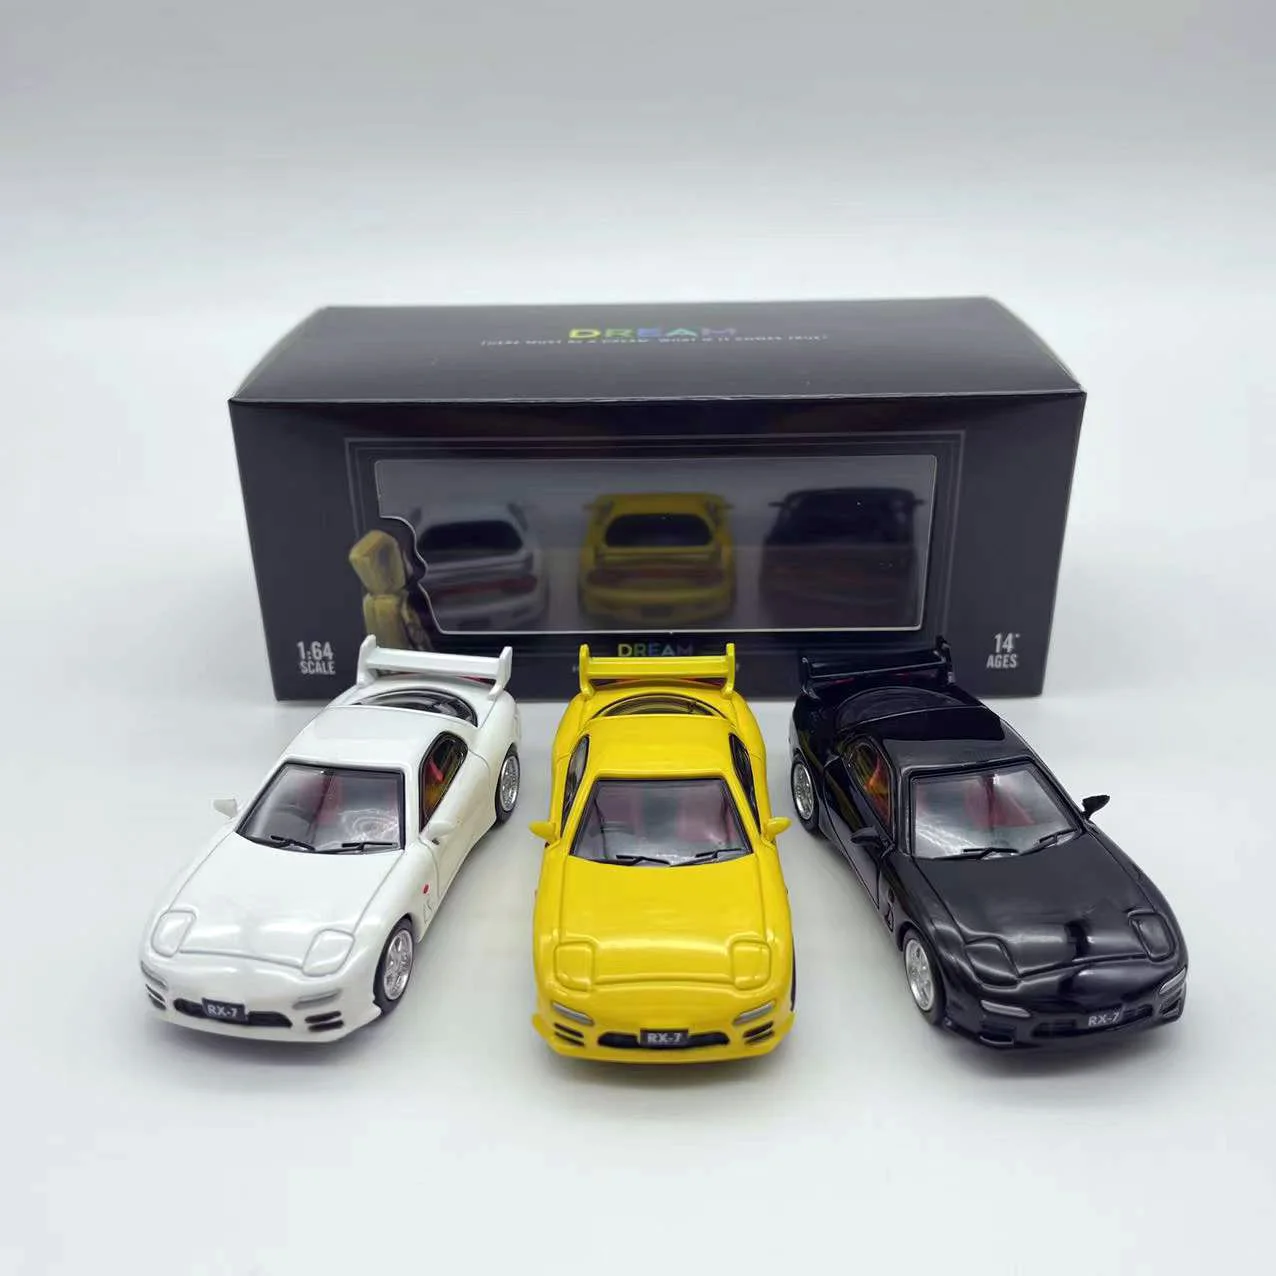 

Timemicro Mazd RX-7 FD серии мечты гоночный автомобиль JDM спортивный автомобиль литые игрушки 1:64 модель автомобиля с чехлом подарок для детей